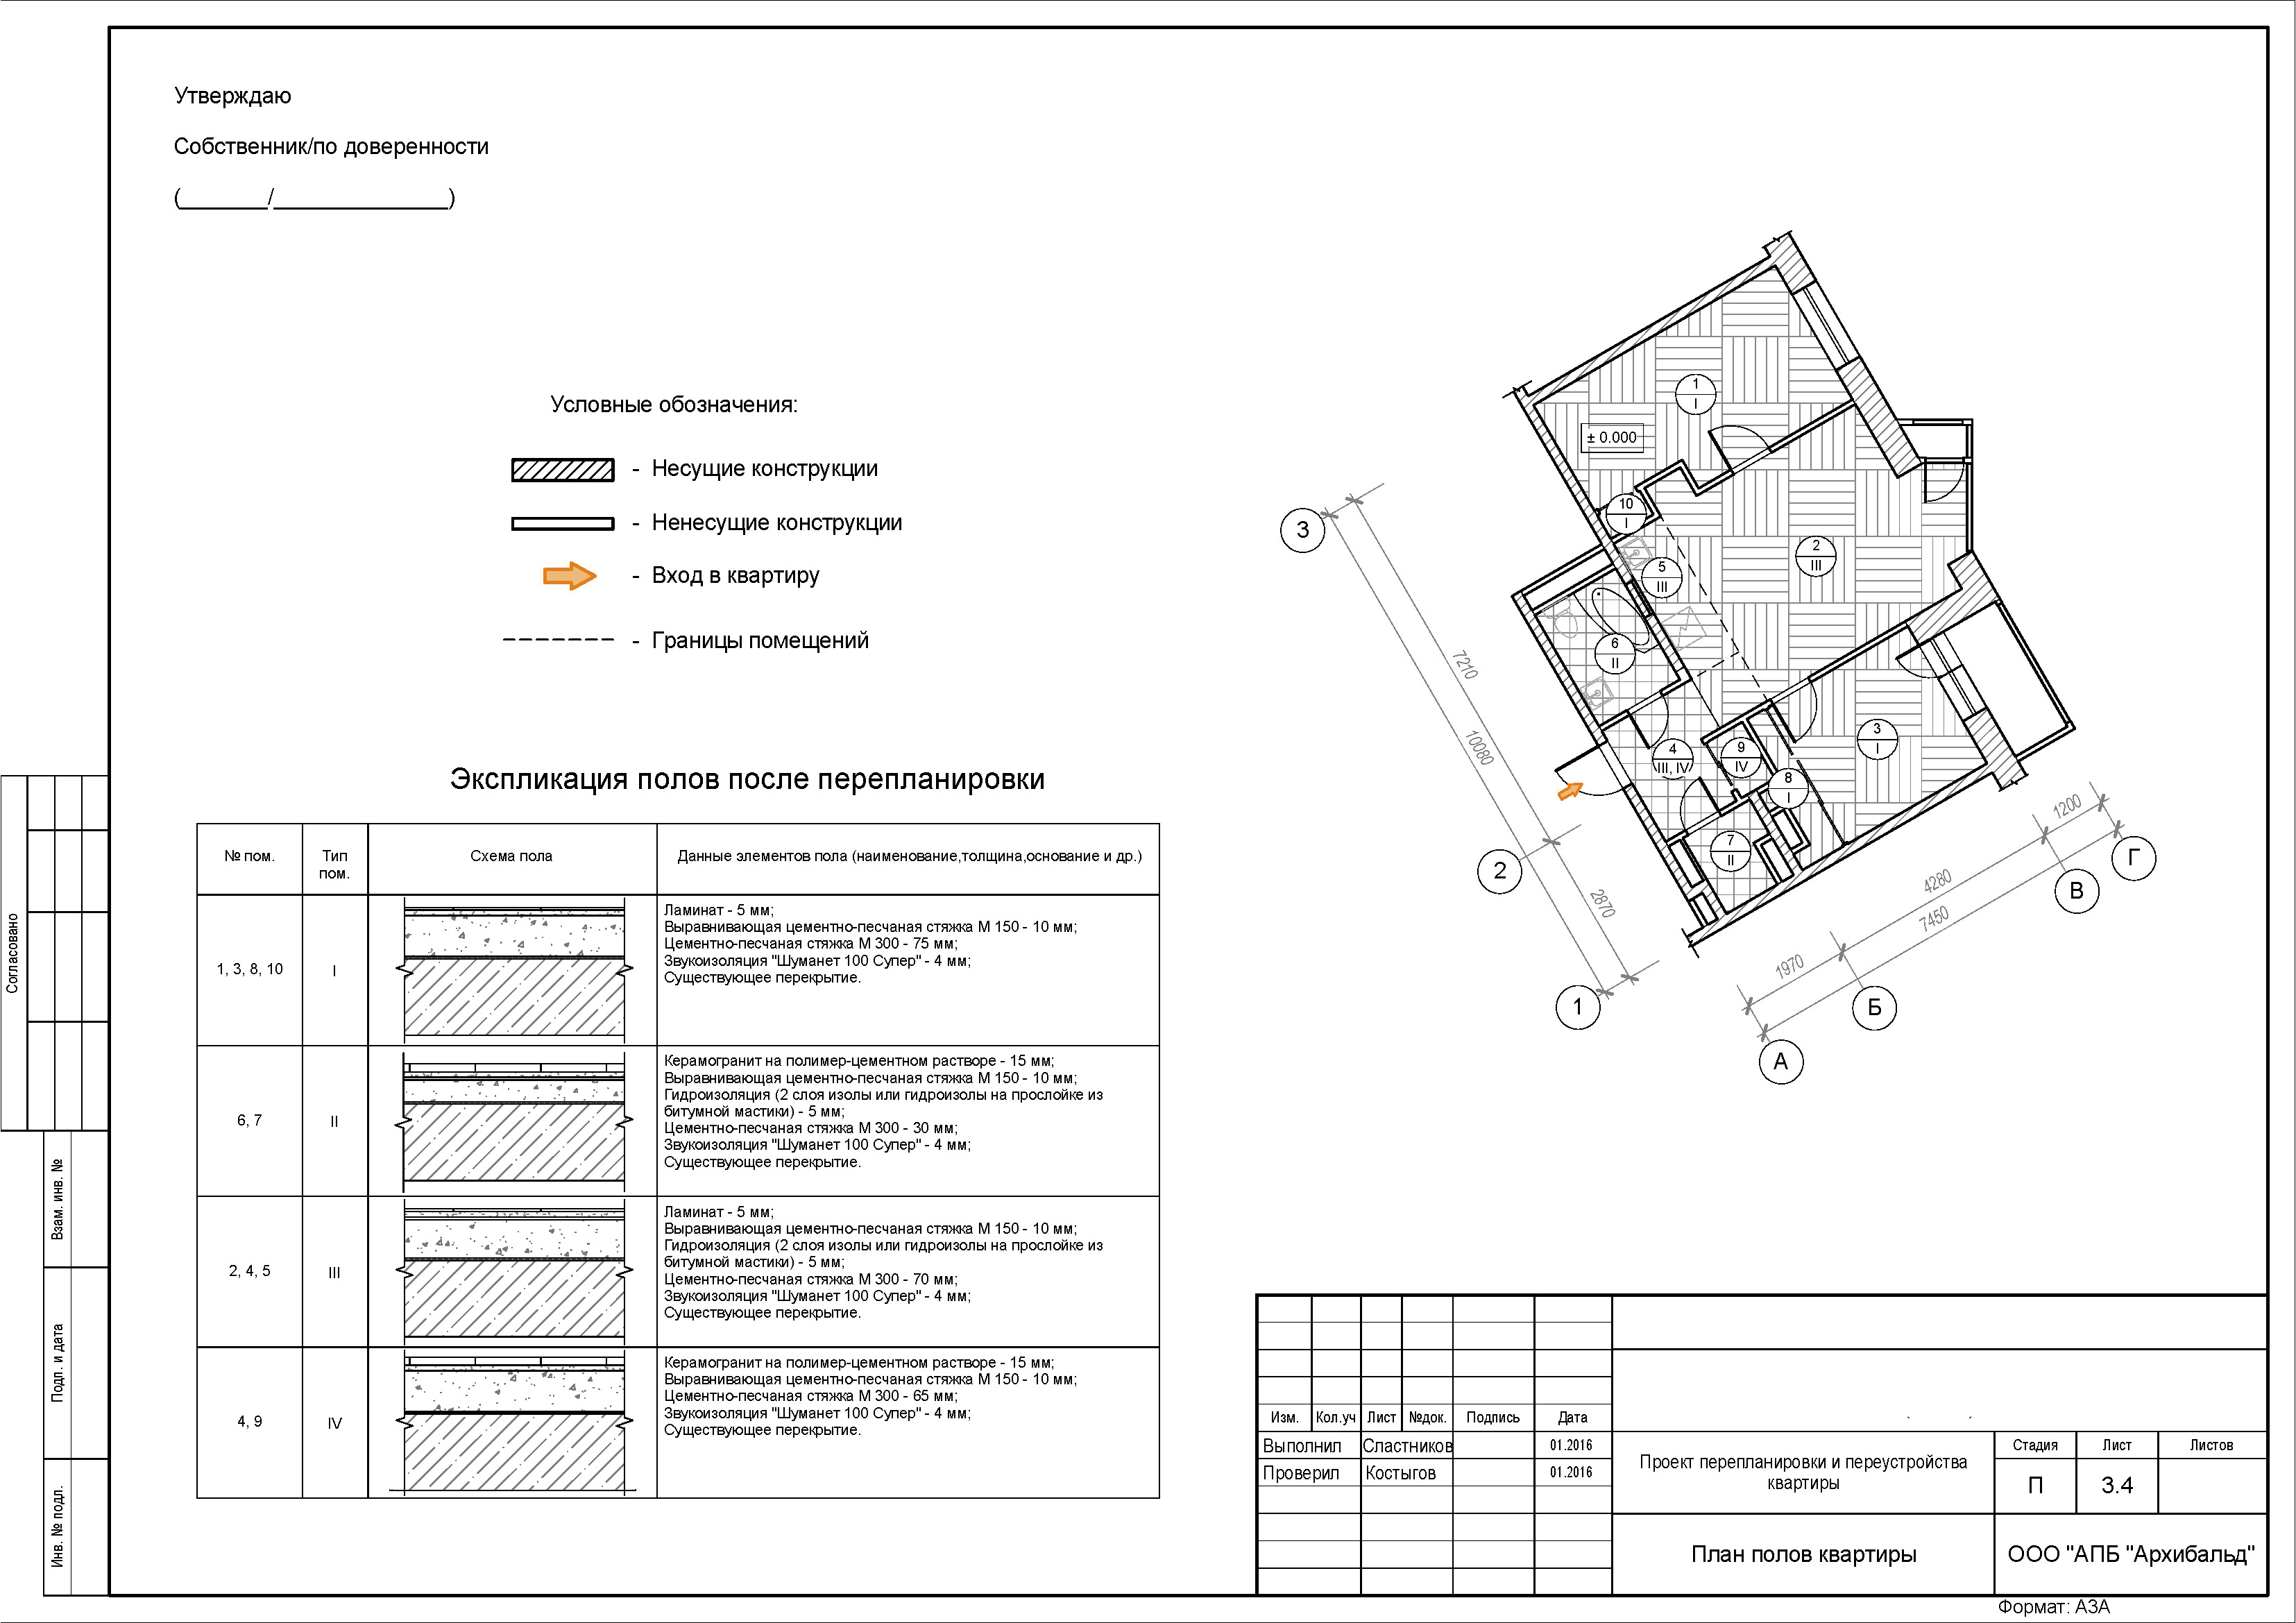 Перепланировка квартиры изменения с 1 апреля. План схема перепланировки квартиры. План перепланировки чертеж. План перепланировки для БТИ образец. Пример проекта перепланировки квартиры для согласования образец.